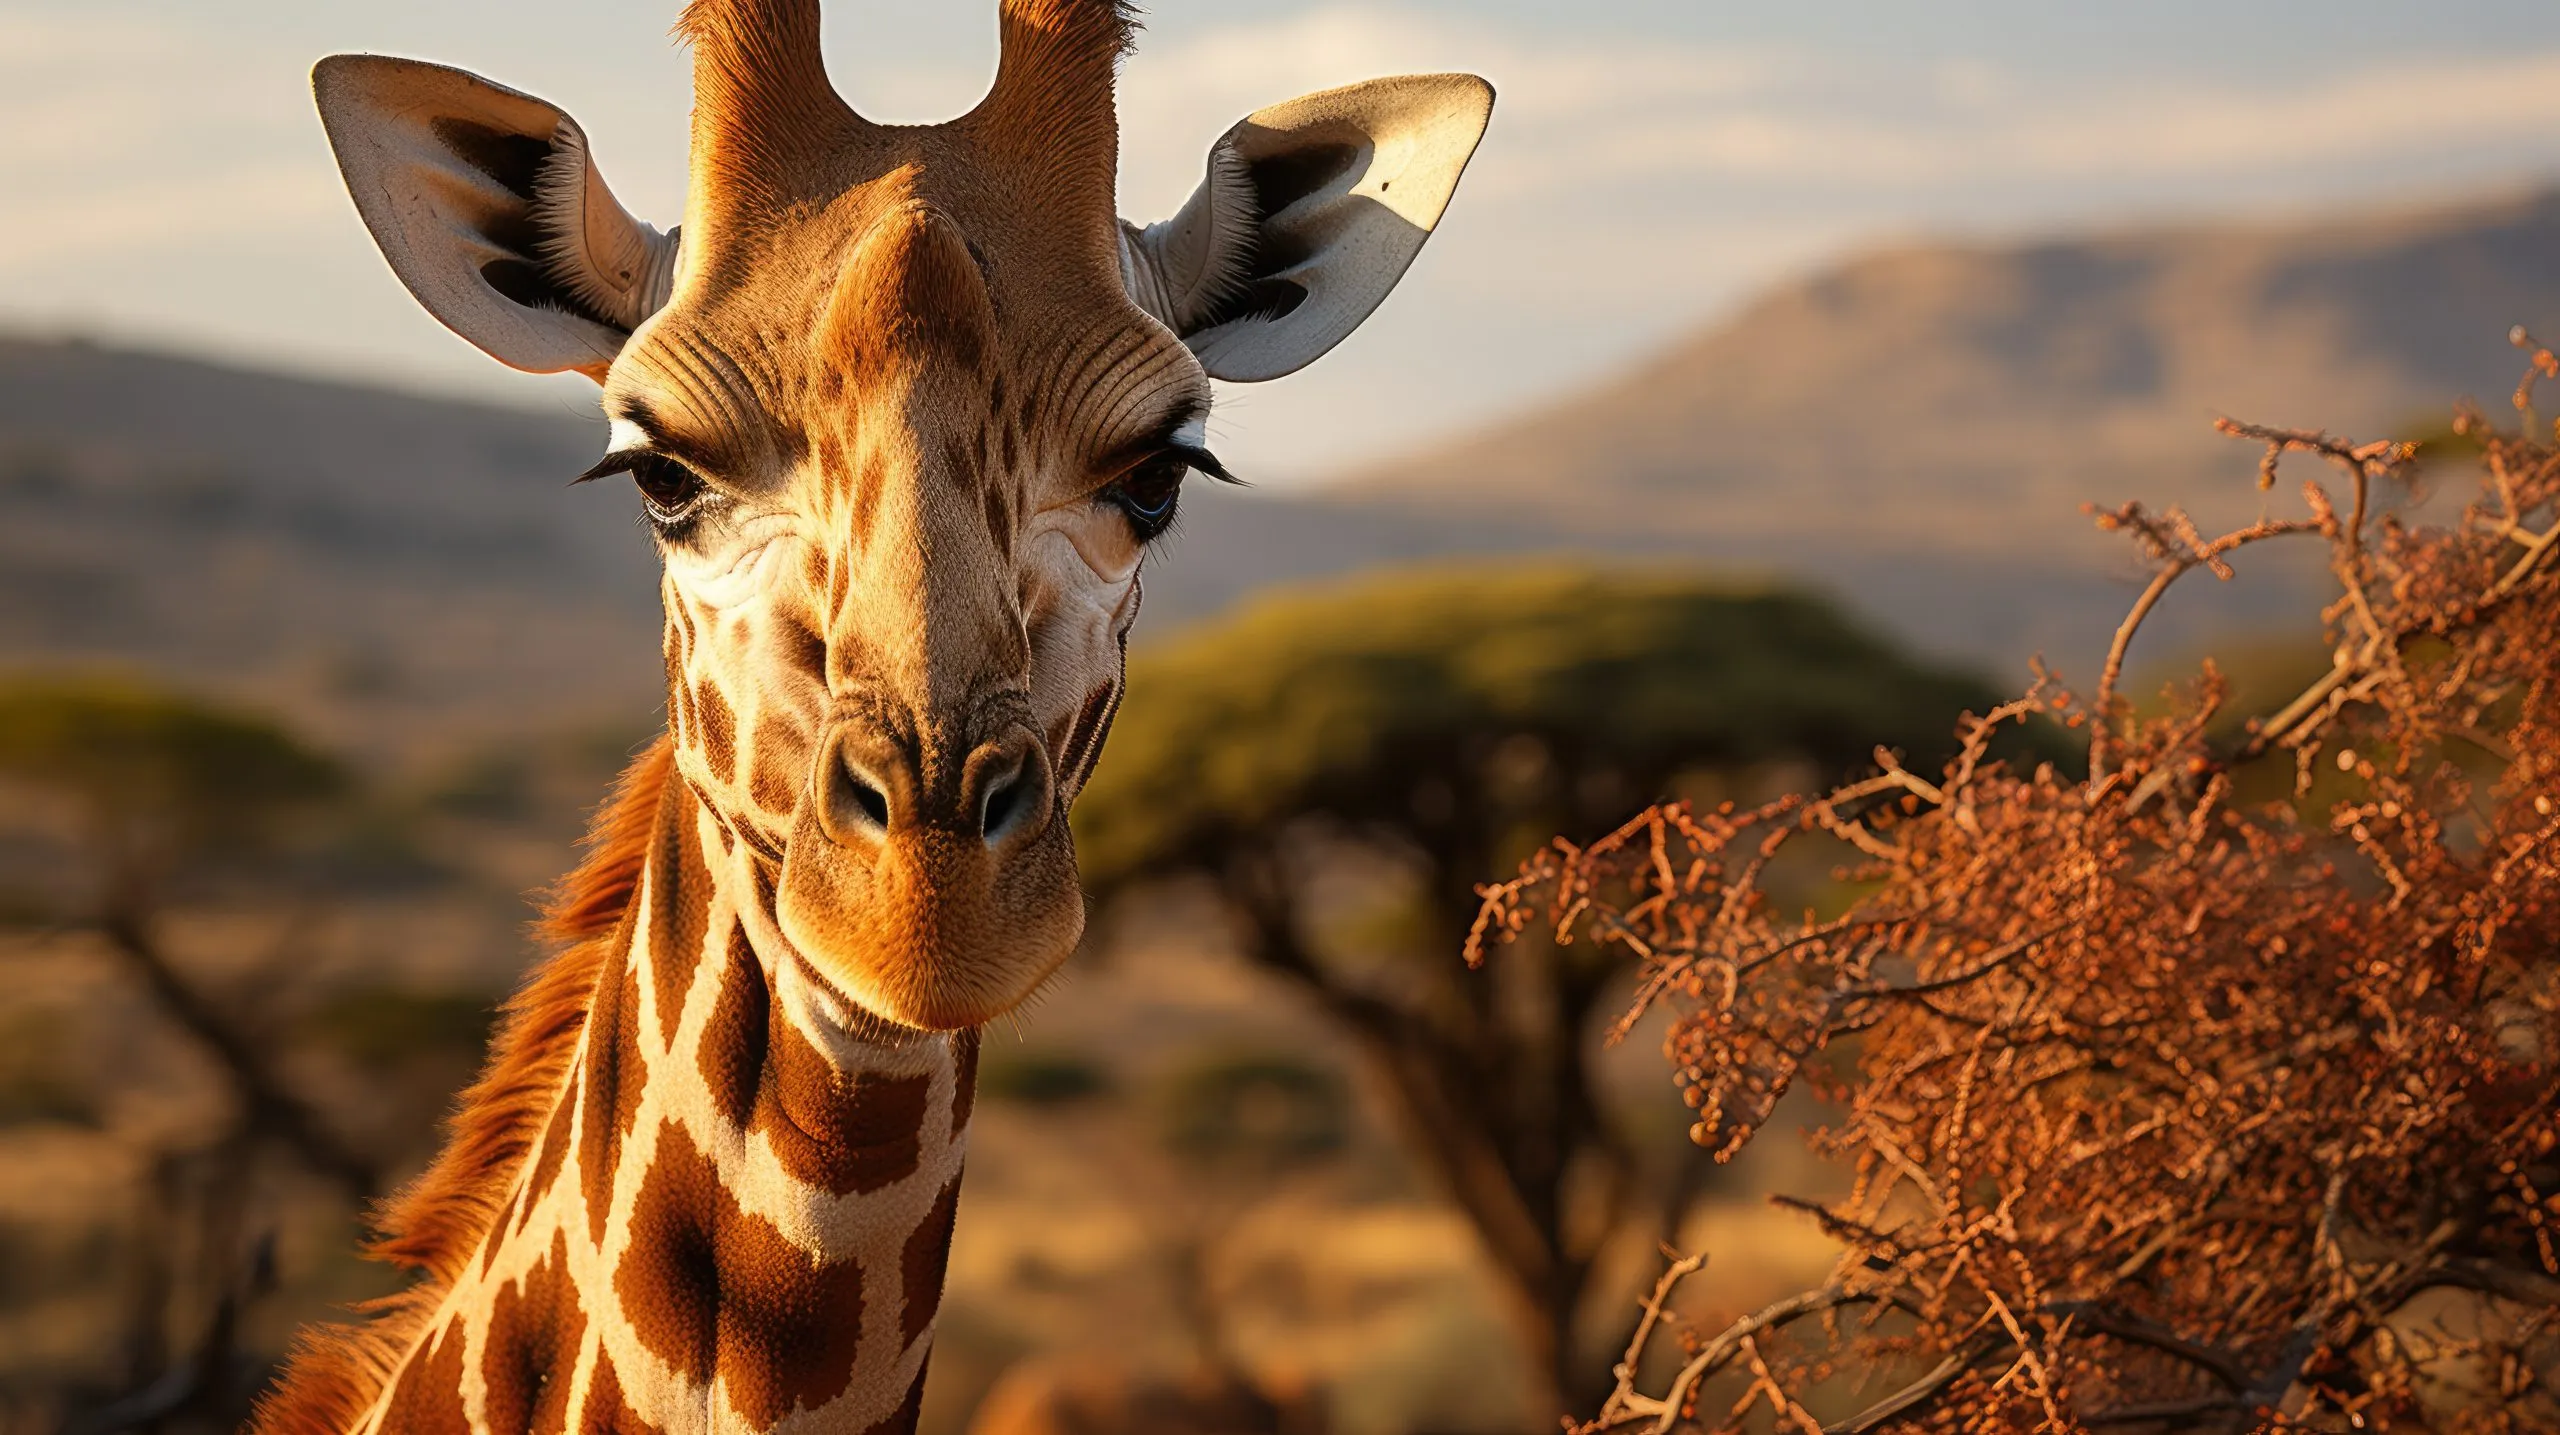 Een gereticuleerde giraffe (Giraffa camelopardalis reticulata) graast op de bovenste takken van een acaciaboom in het Keniaanse Samburu National Reserve. Zijn lange nek en gedessineerde vacht vallen op in het Afrikaanse landschap.